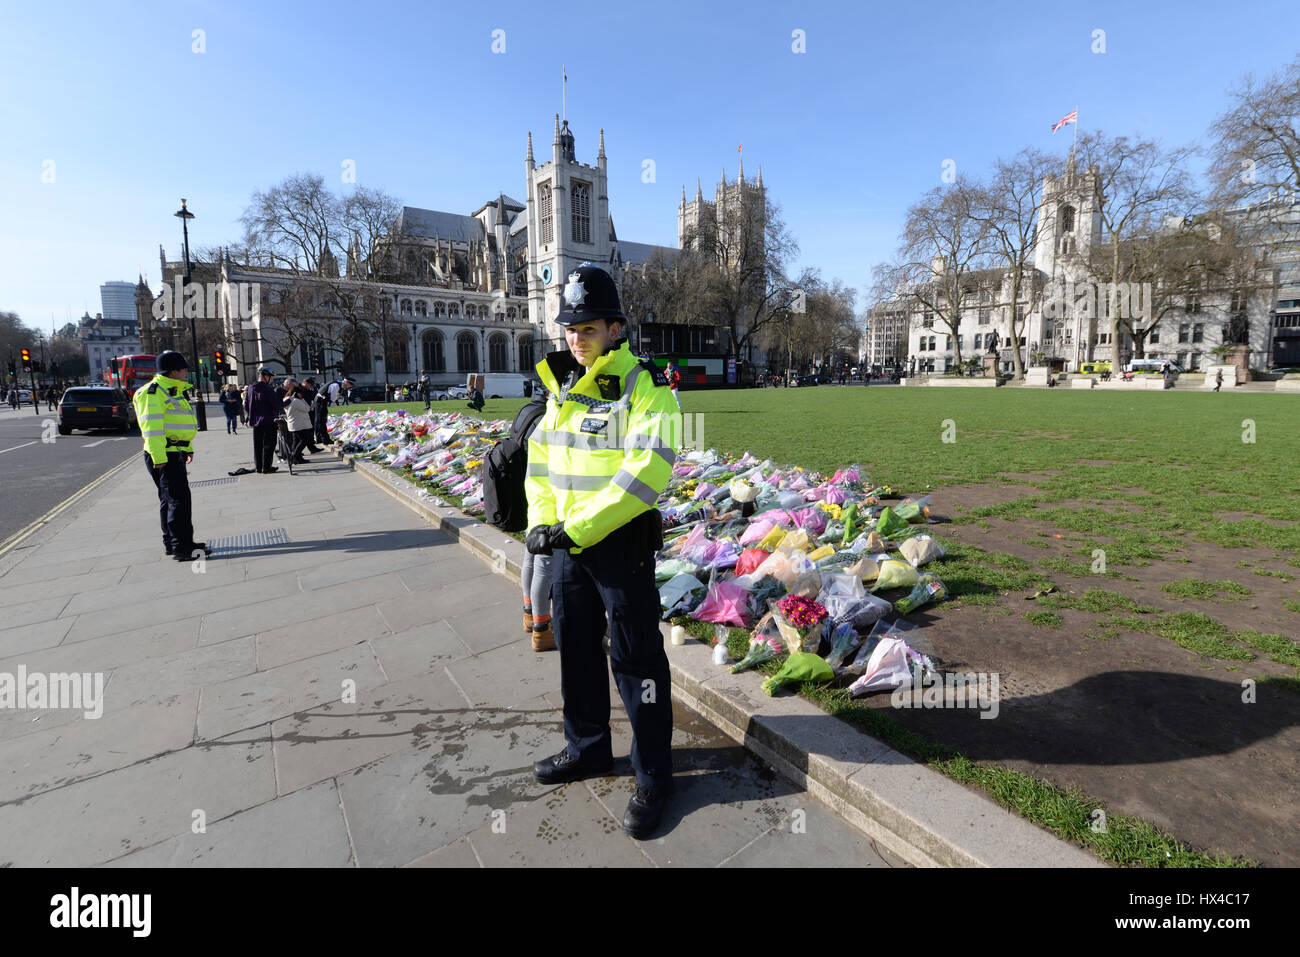 Suite à l'attaque terroriste contre le Parlement le mercredi 22 mars, de nombreux hommages ont été rendus dans la région. Hommages floraux à l'extérieur du Palais de Westminster Banque D'Images